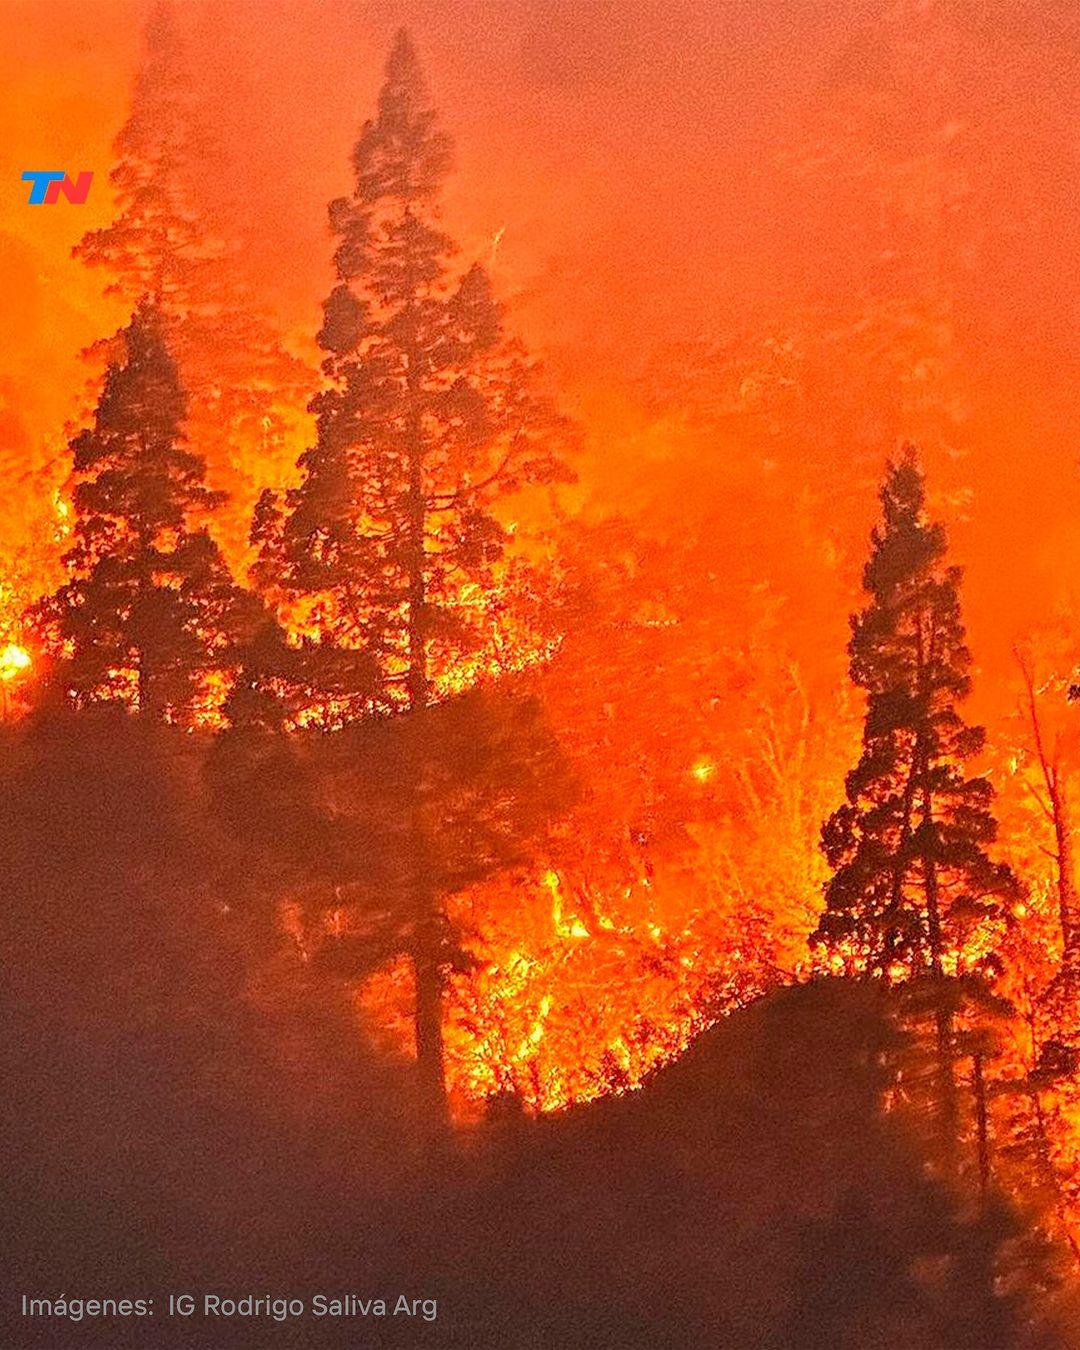 Drama en la Patagonia por un incendio forestal en el Parque Nacional Nahuel Huapi

El fuego empezó ayer, en la zona del Brazo Tristeza, al sur del área protegida y por precaución están cerrados los senderos y circuitos turísticos. 

El área está en alerta extrema.  Las llamas ya arrasaron con más de 3.500 hectáreas de bosque en el Parque Nacional Los Alerces, y parte de la provincia de Chubut.